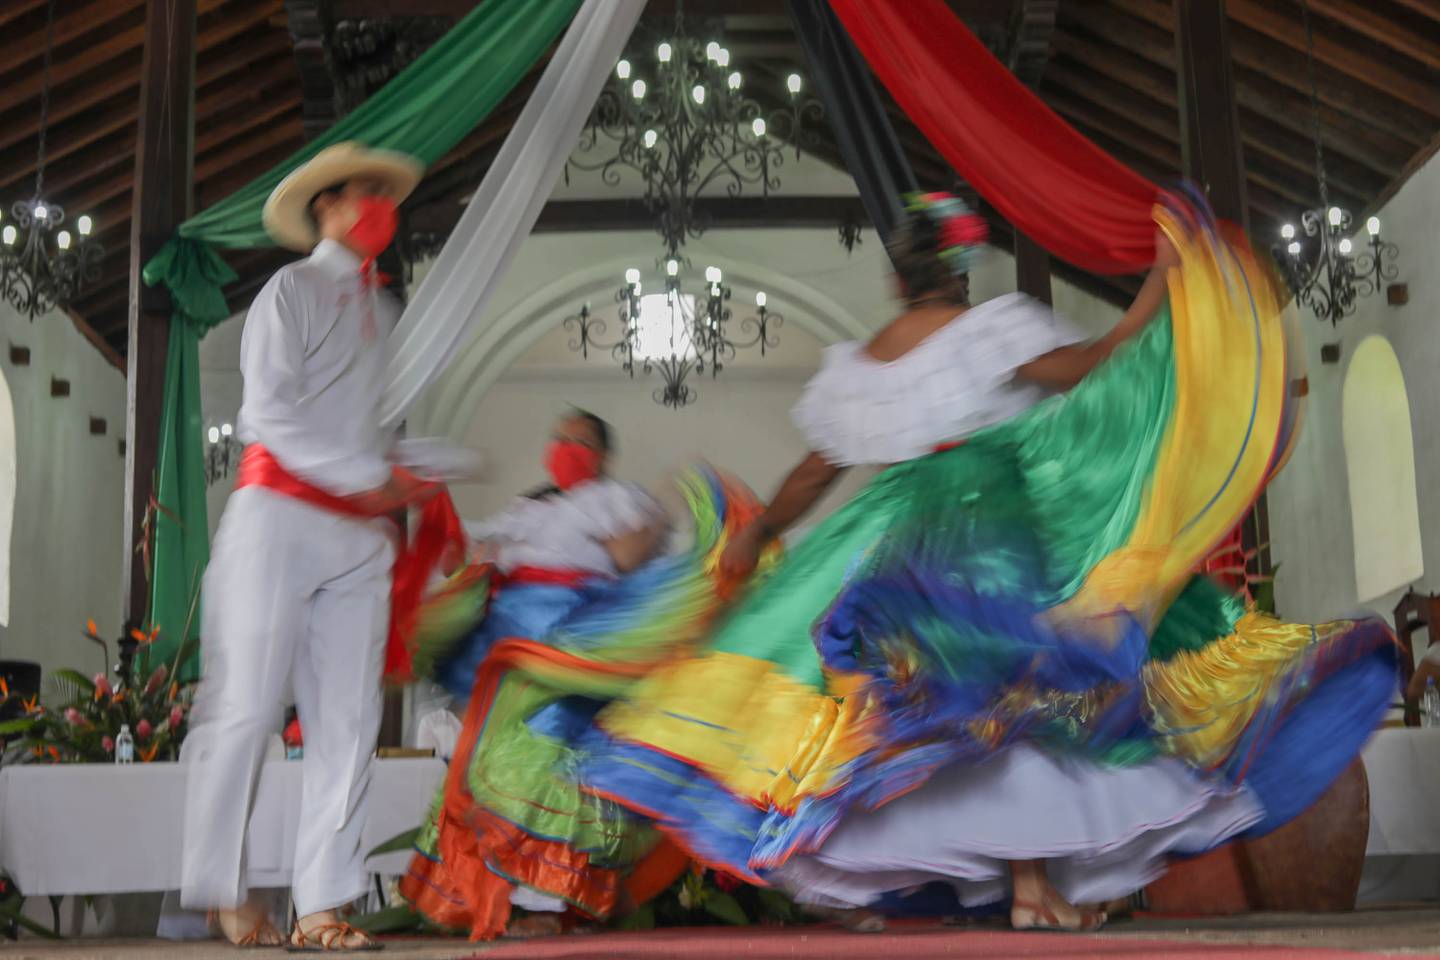 Luego de permanecer cerrado por la pandemia del COVID-19, el histórico templo de San Blas de Nicoya reabrió sus puertas este domingo 25 de julio para que se hiciera la sesión solemne del Concejo Municipal, en conmemoración del 197 aniversario de la Incorporación del Partido de Nicoya a Costa Rica